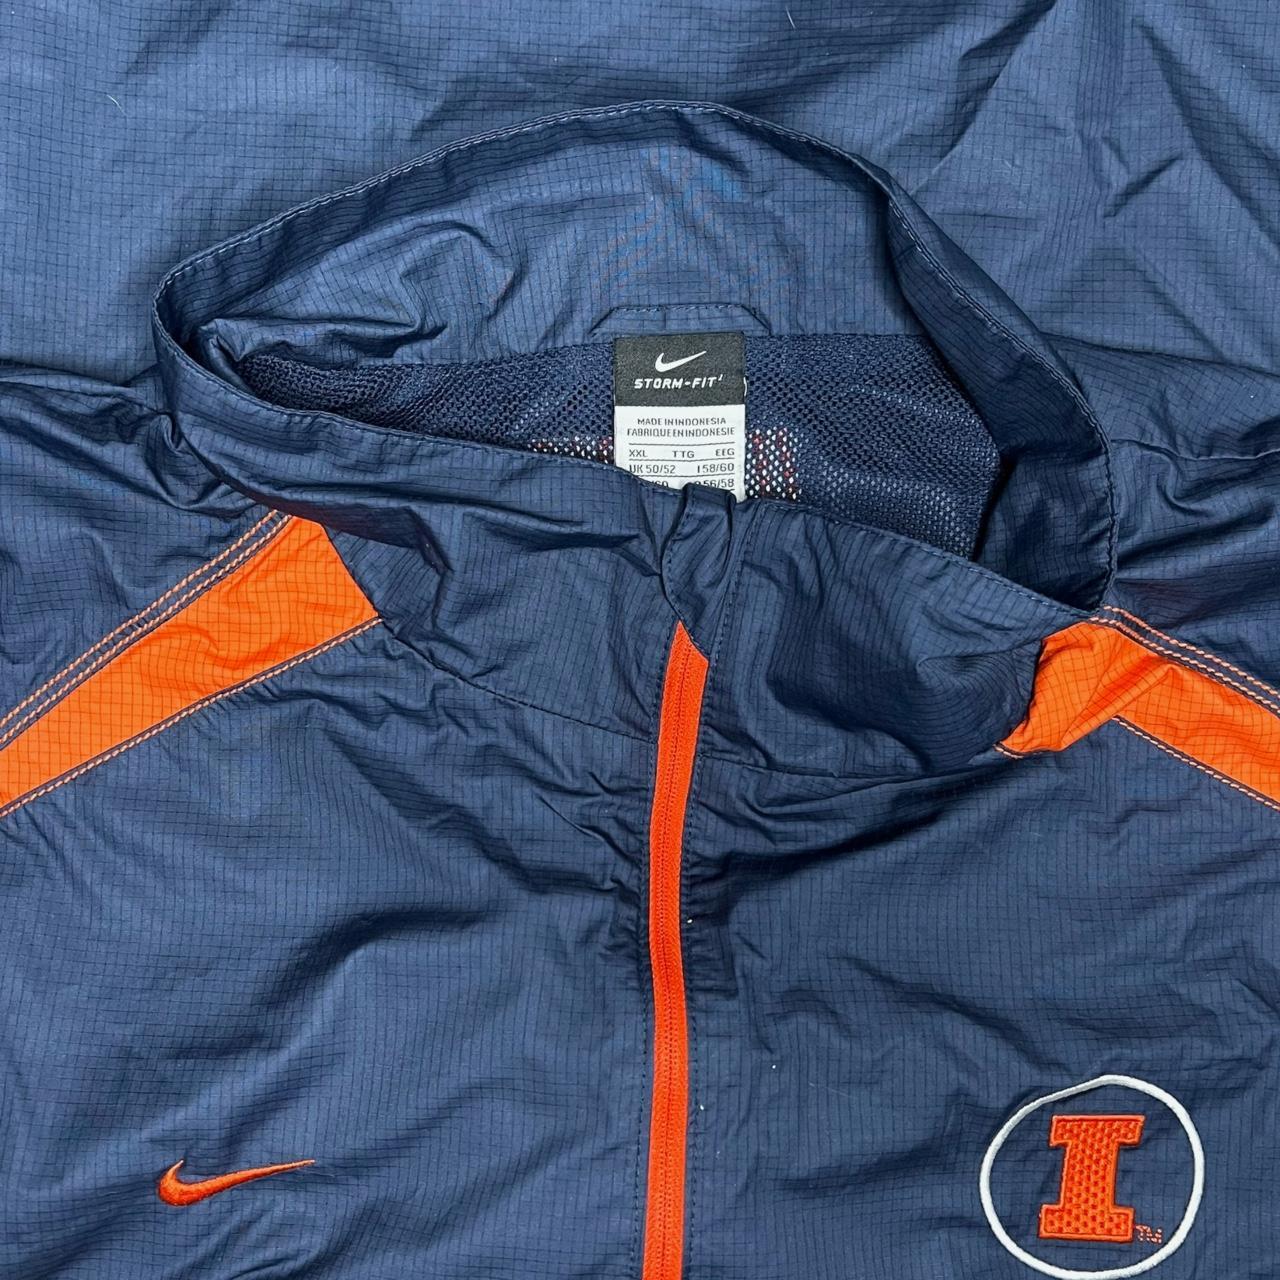 Nike Men's Navy and Orange Jacket (4)